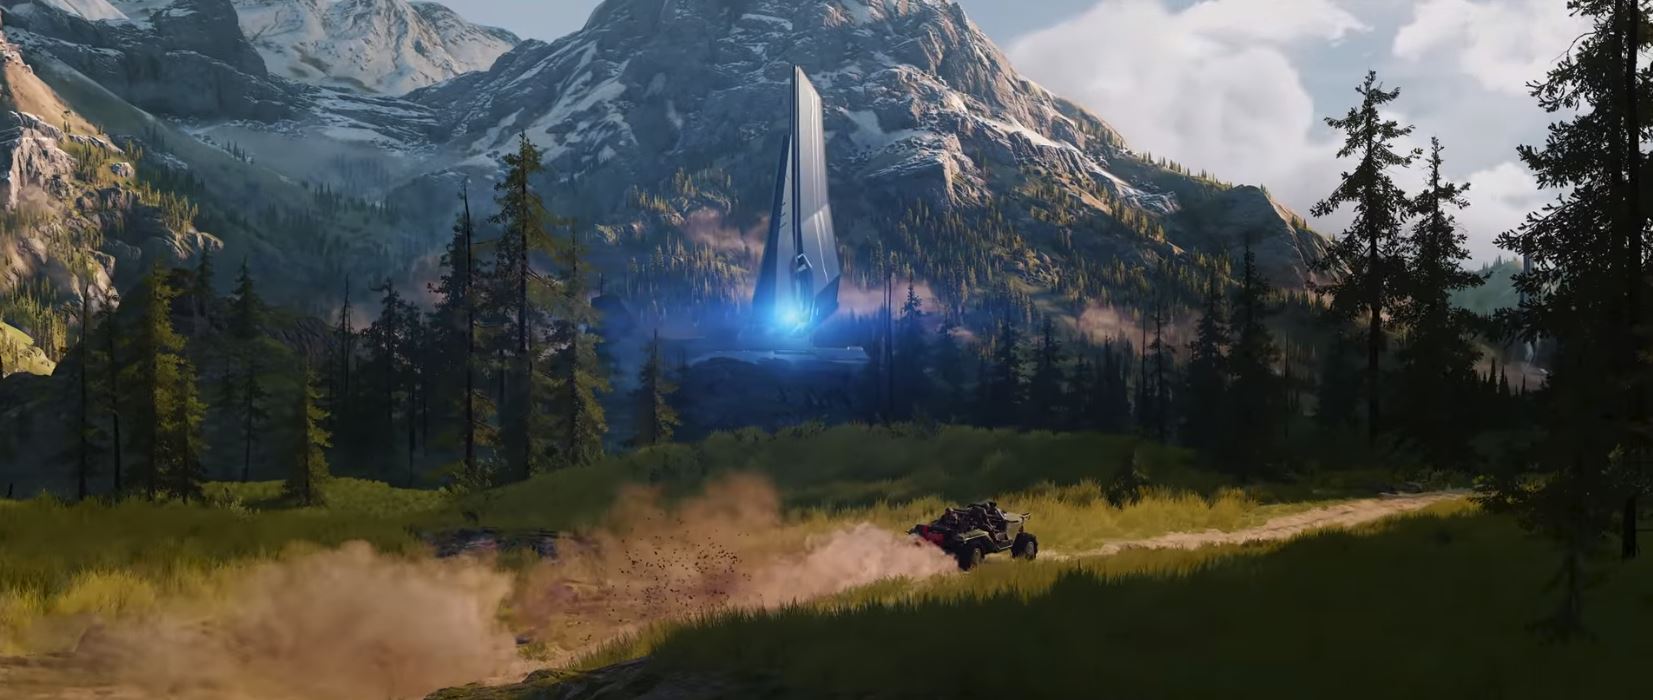 Halo Infinite: Seht hier den neuen Trailer von der E3